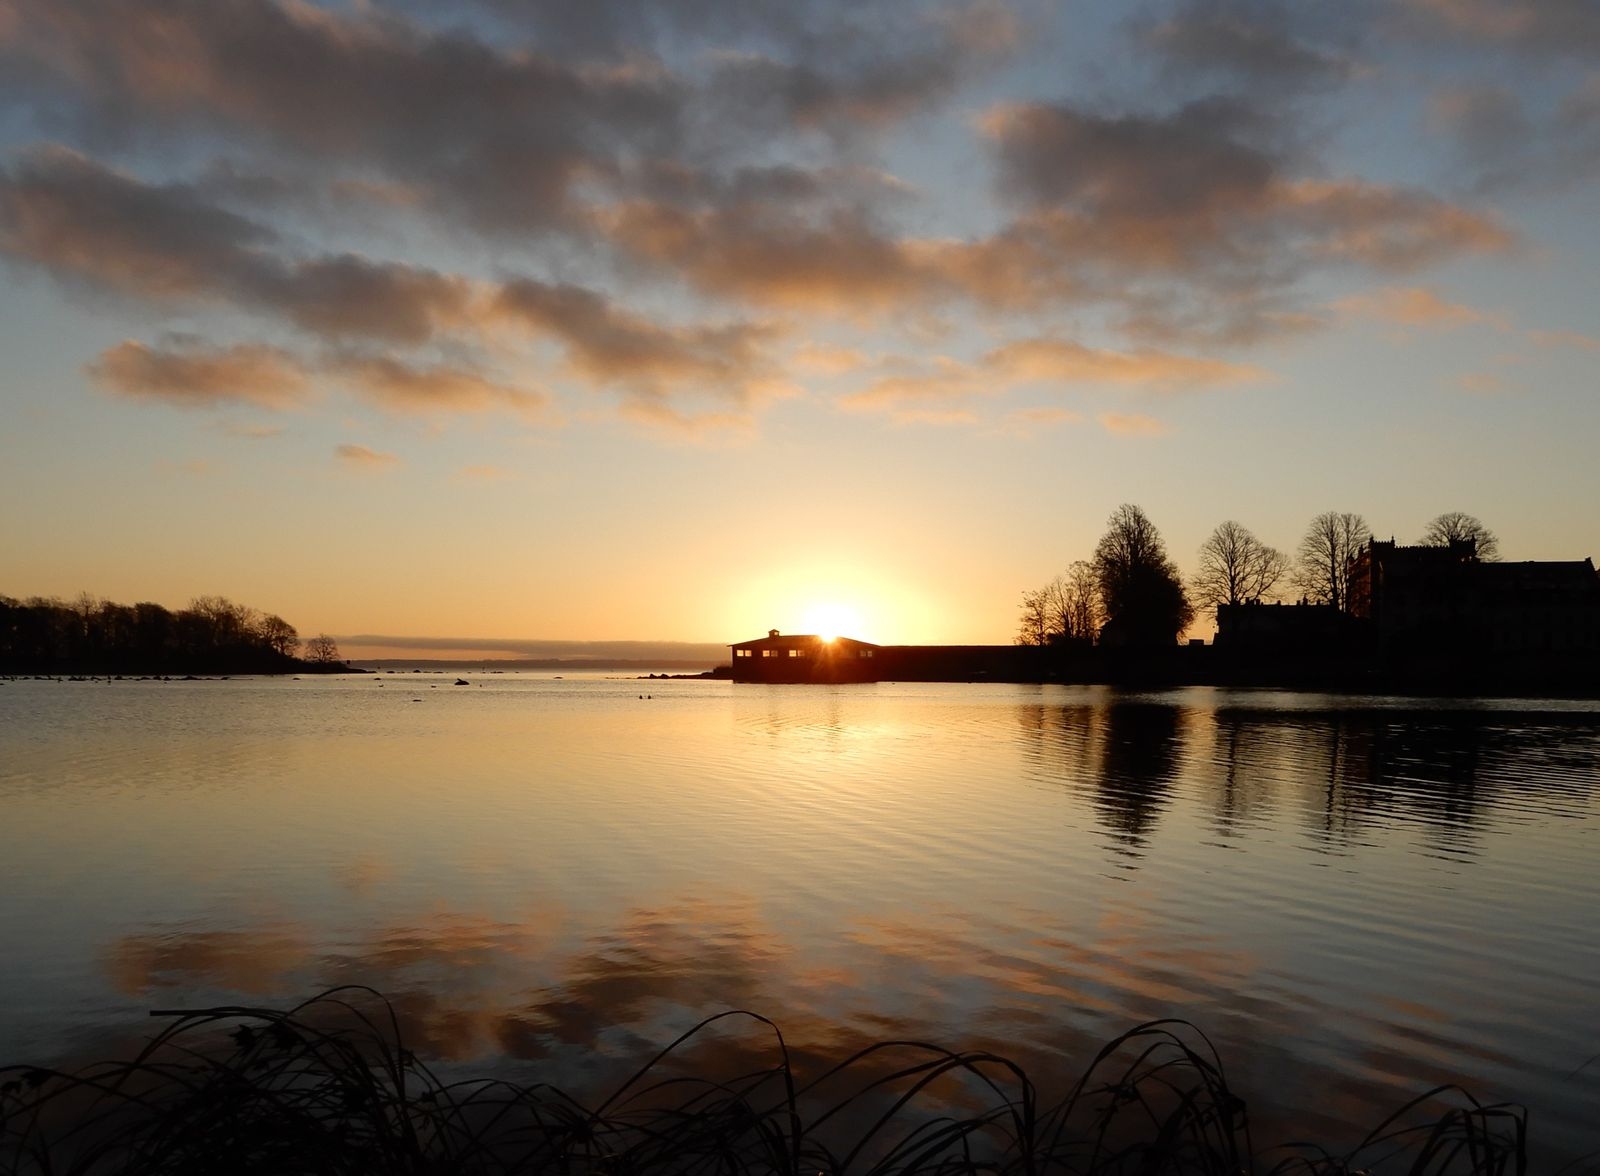 Sune Hansson badar året om. Det här morgonen gick solen upp stillsamt. Fotot är taget från badbryggan vid Ängö.